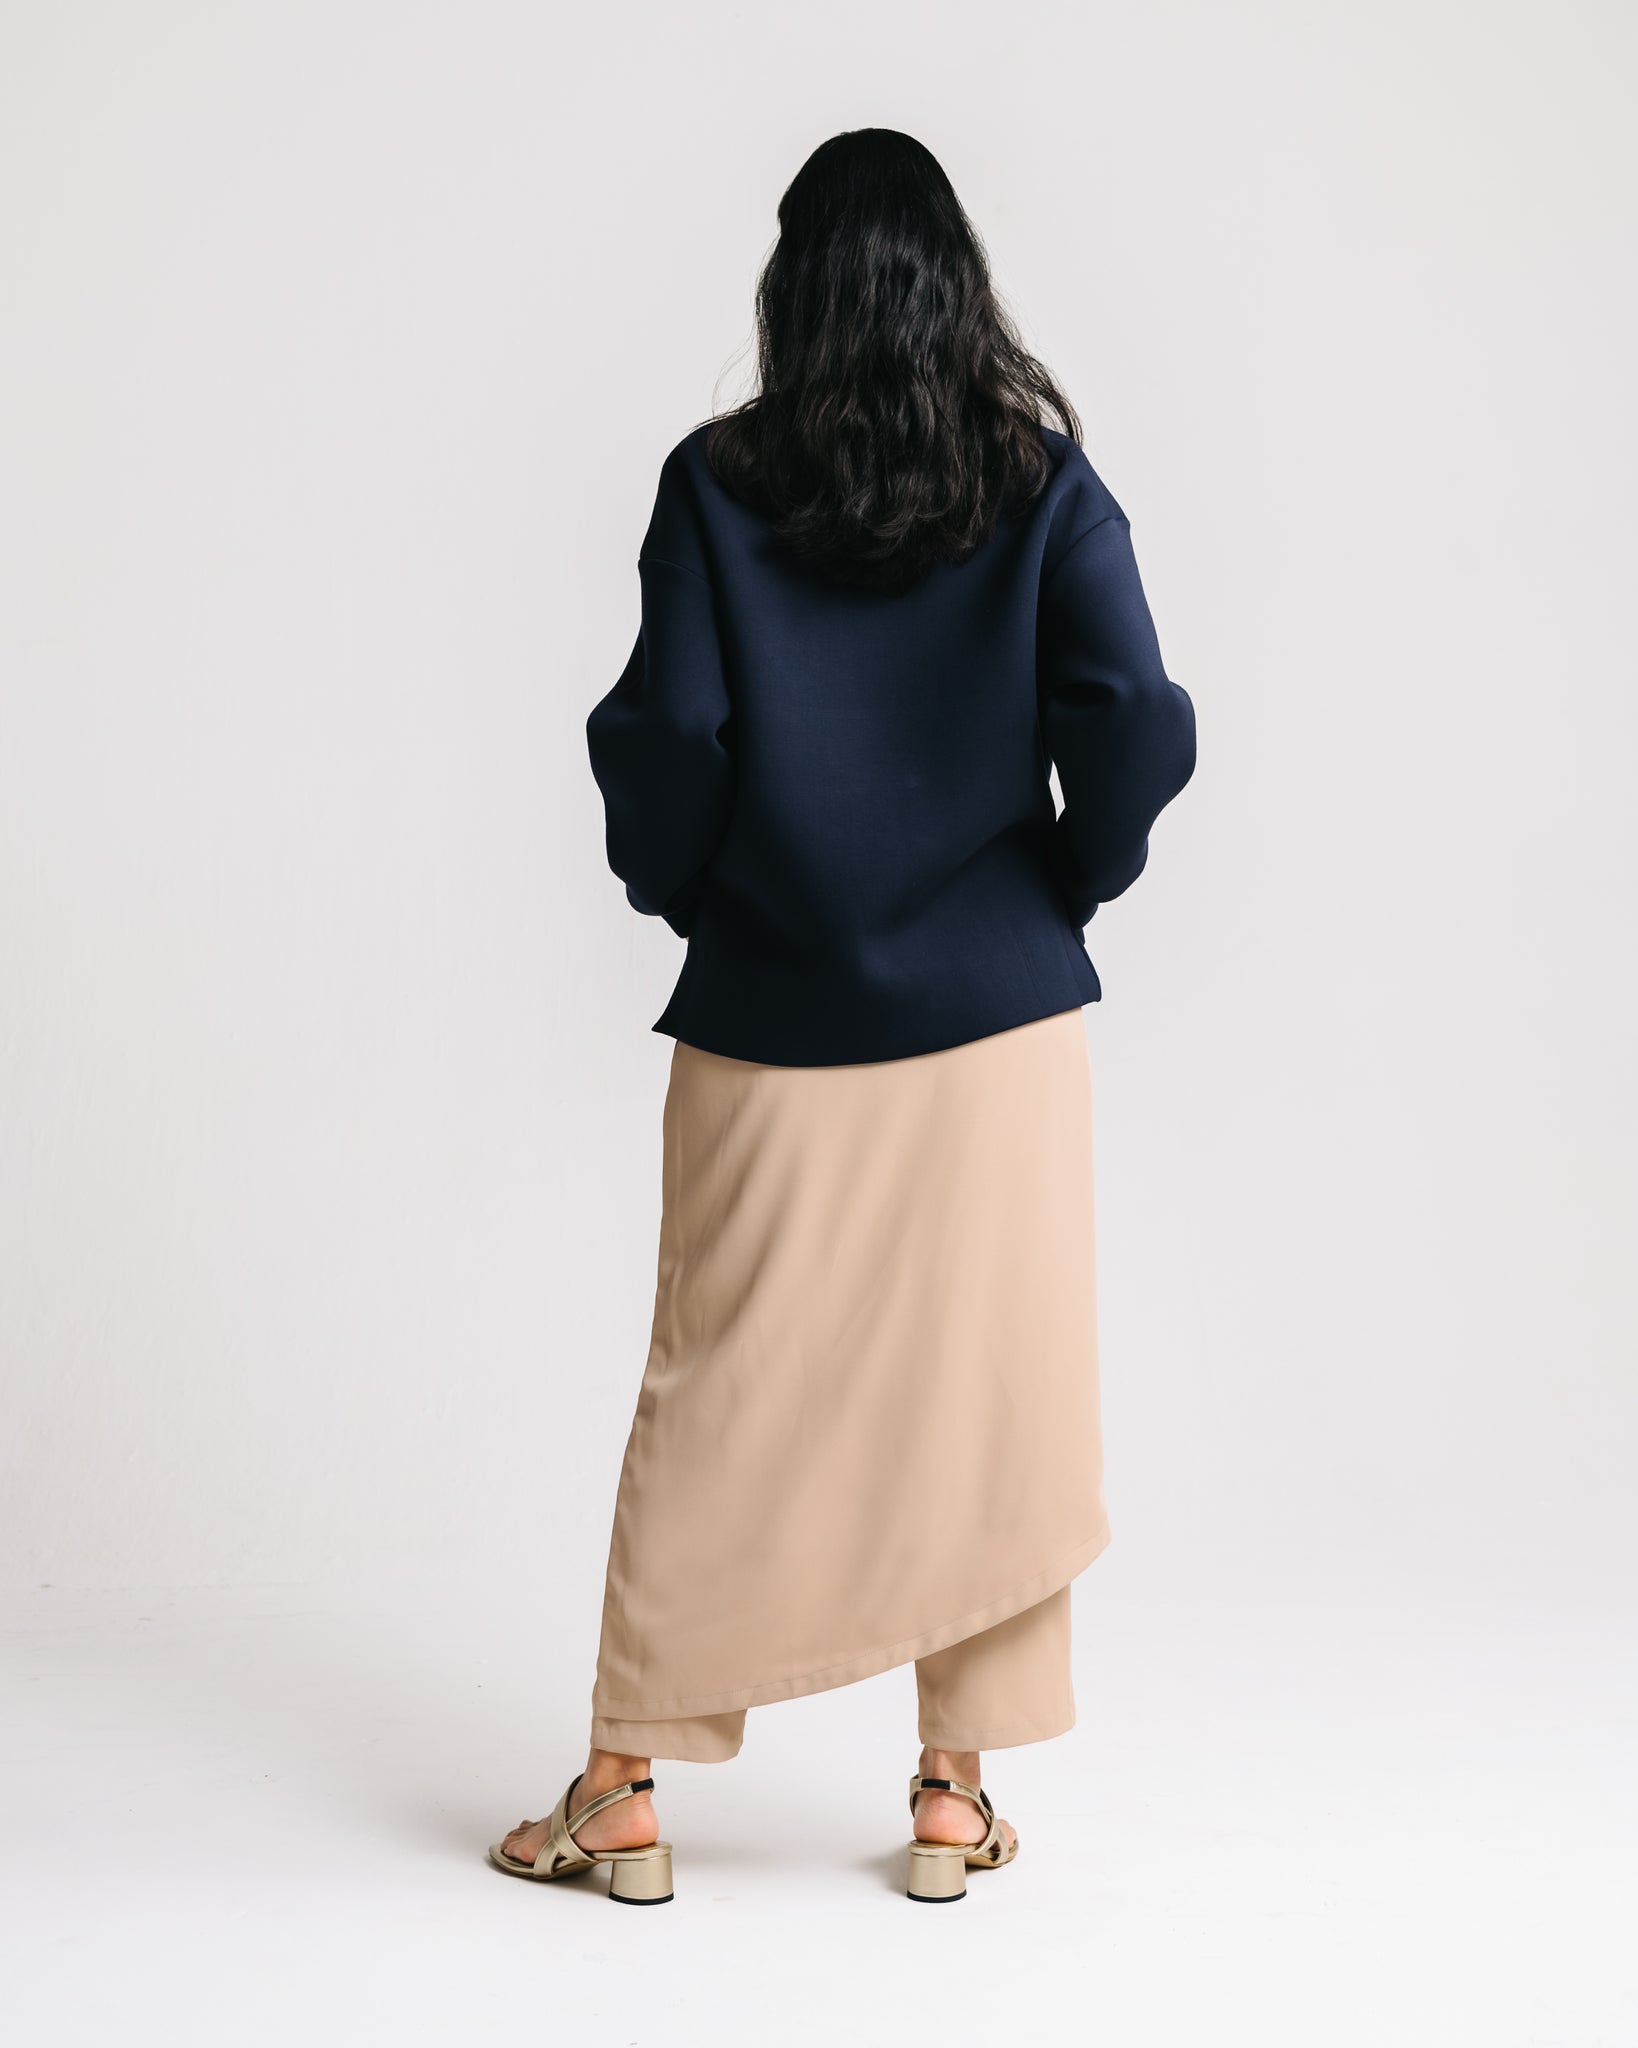 Asymmetrical Skirt Pants (Khaki)